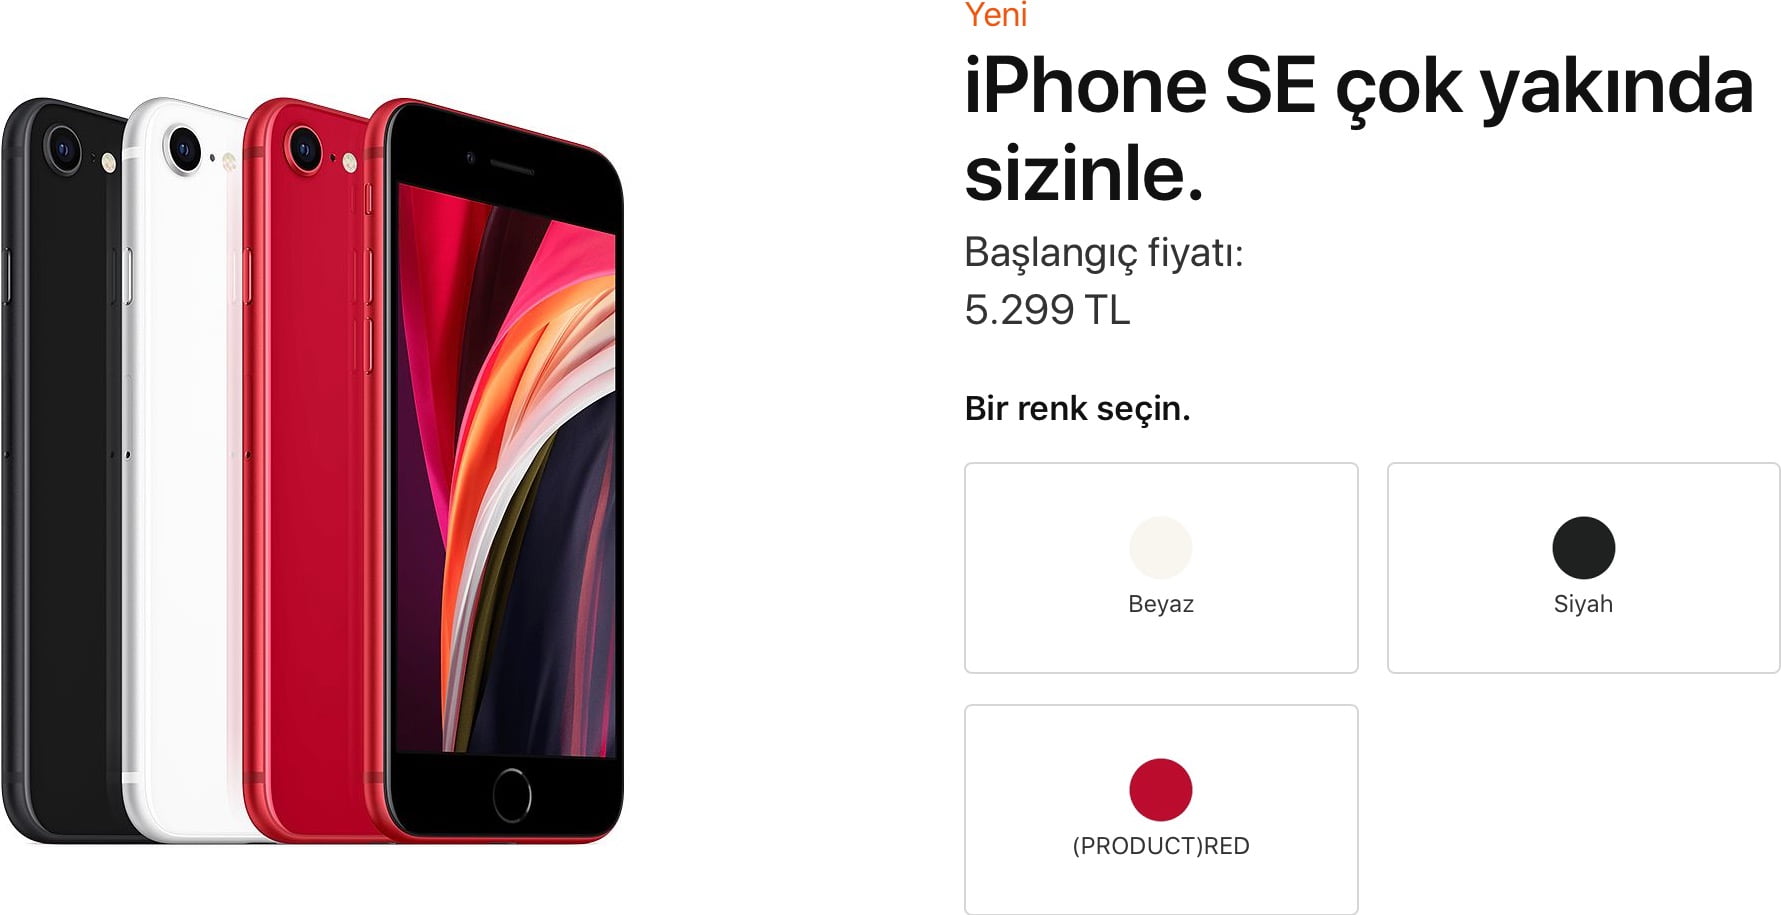 iPhone SE Türkiye fiyatı 